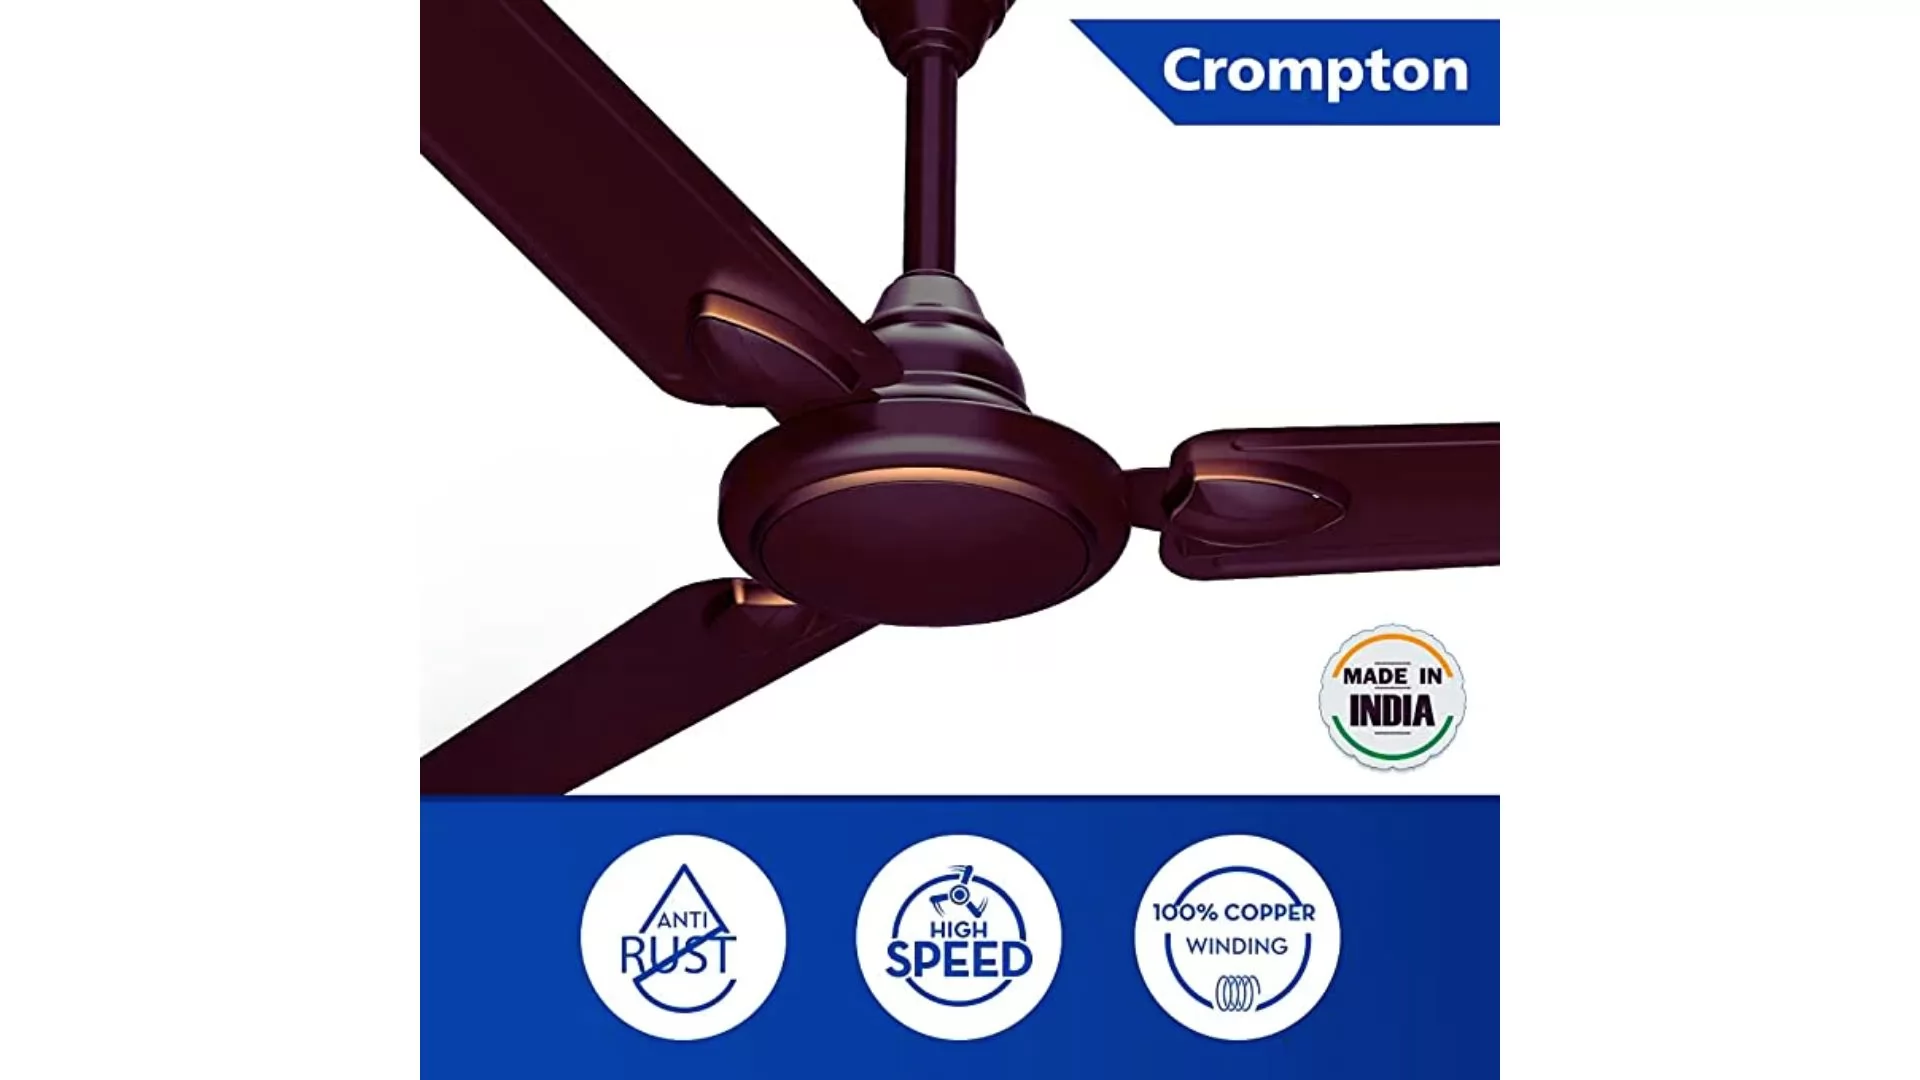 Crompton Hill Briz ceiling fan